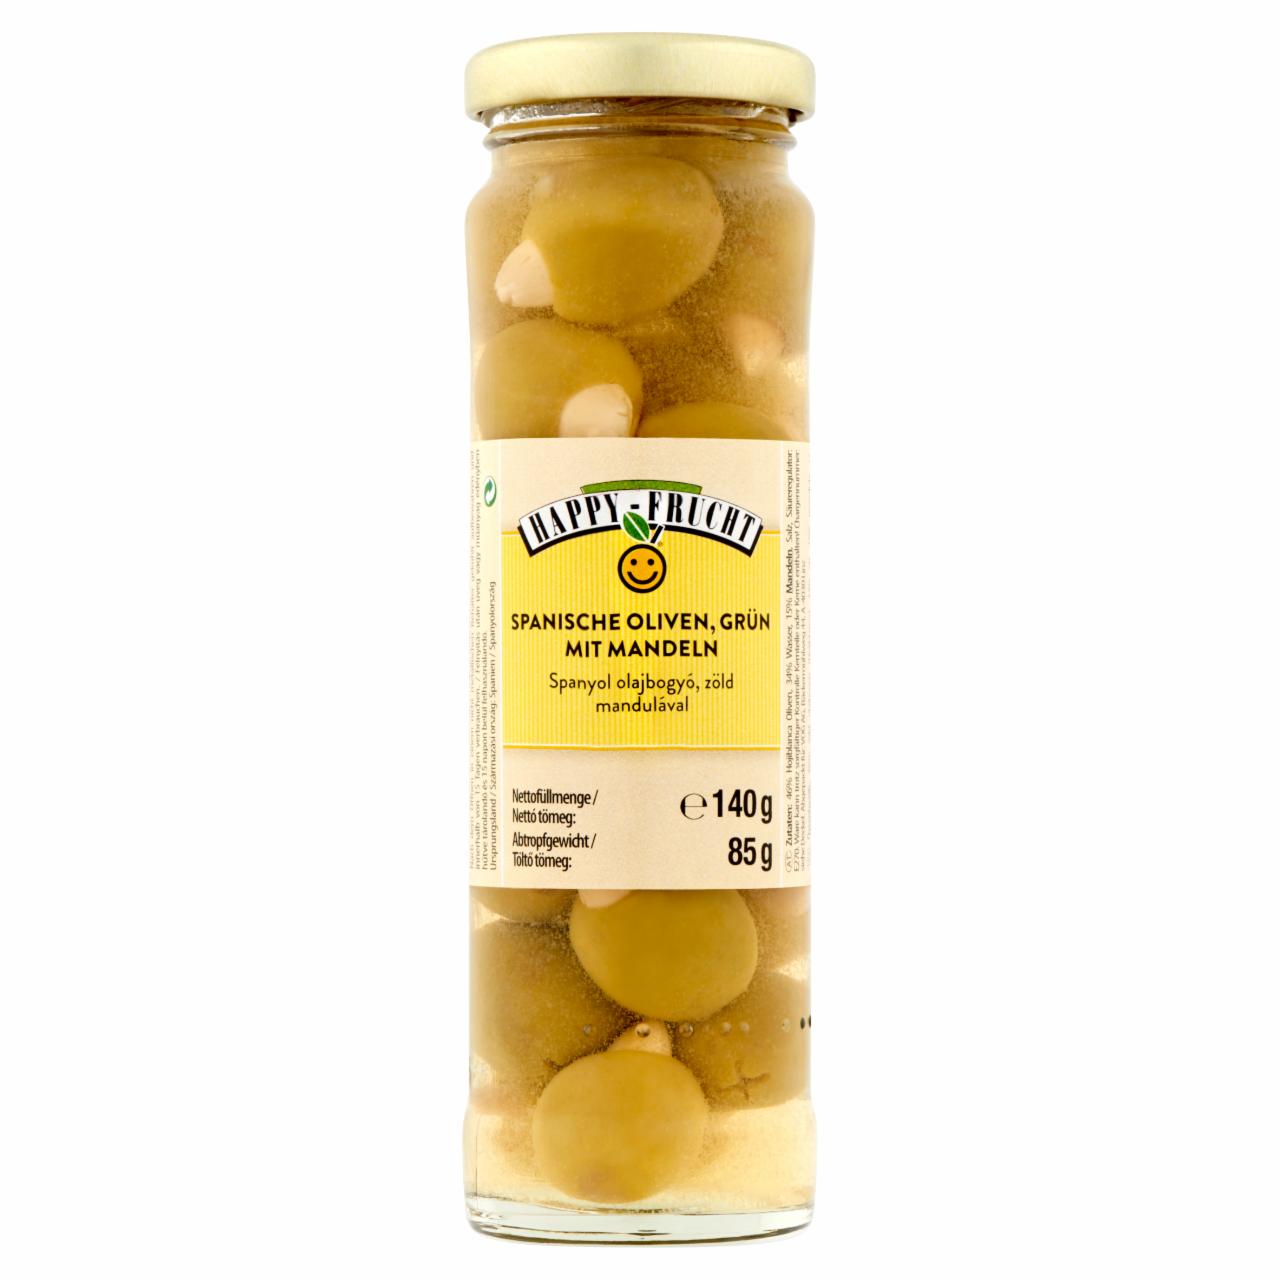 Képek - Happy Frucht zöld spanyol olajbogyó mandulával 140 g